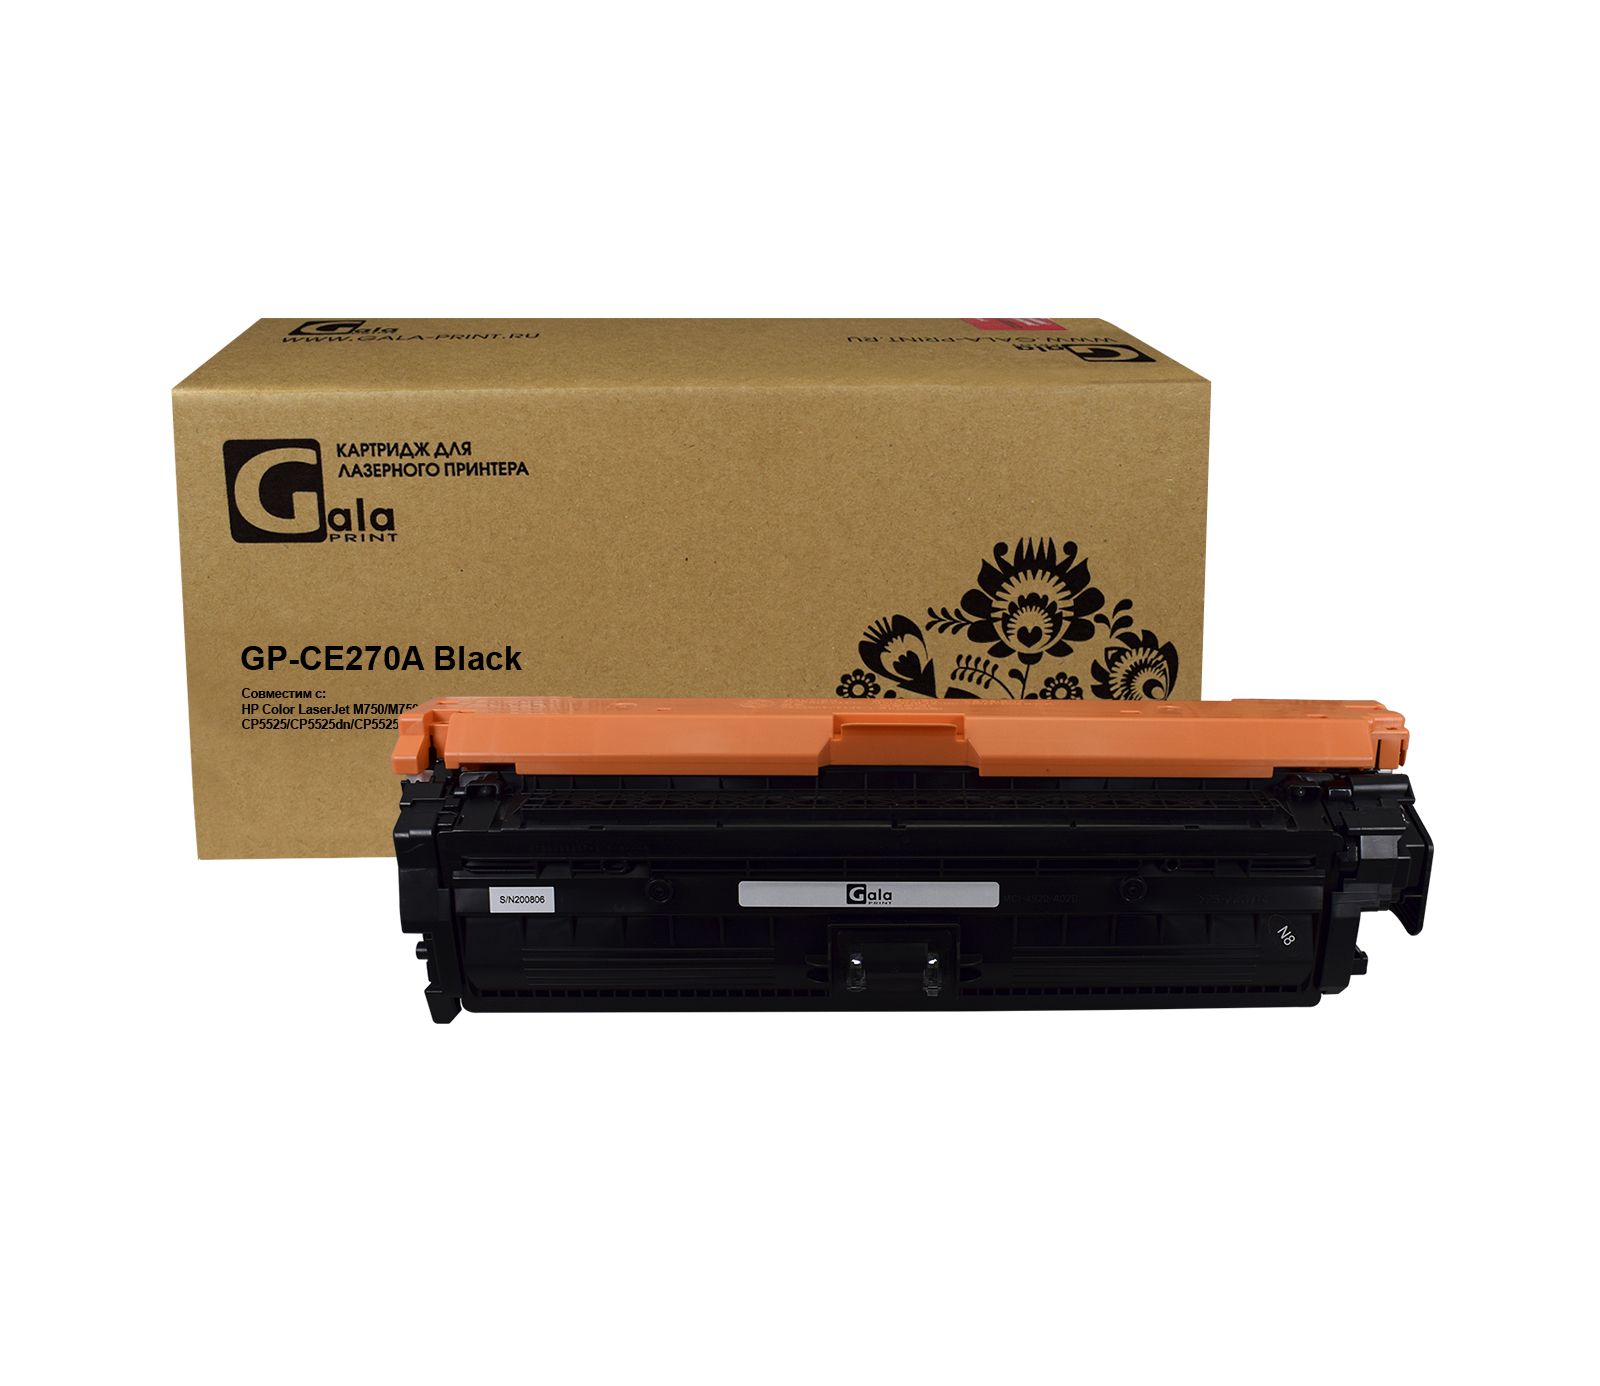 Картридж GP-CE270A для принтеров HP LaserJet CP5525/5525n/5525dn/5525xh/M750n/M750dn Black 13000 копий GalaPrint